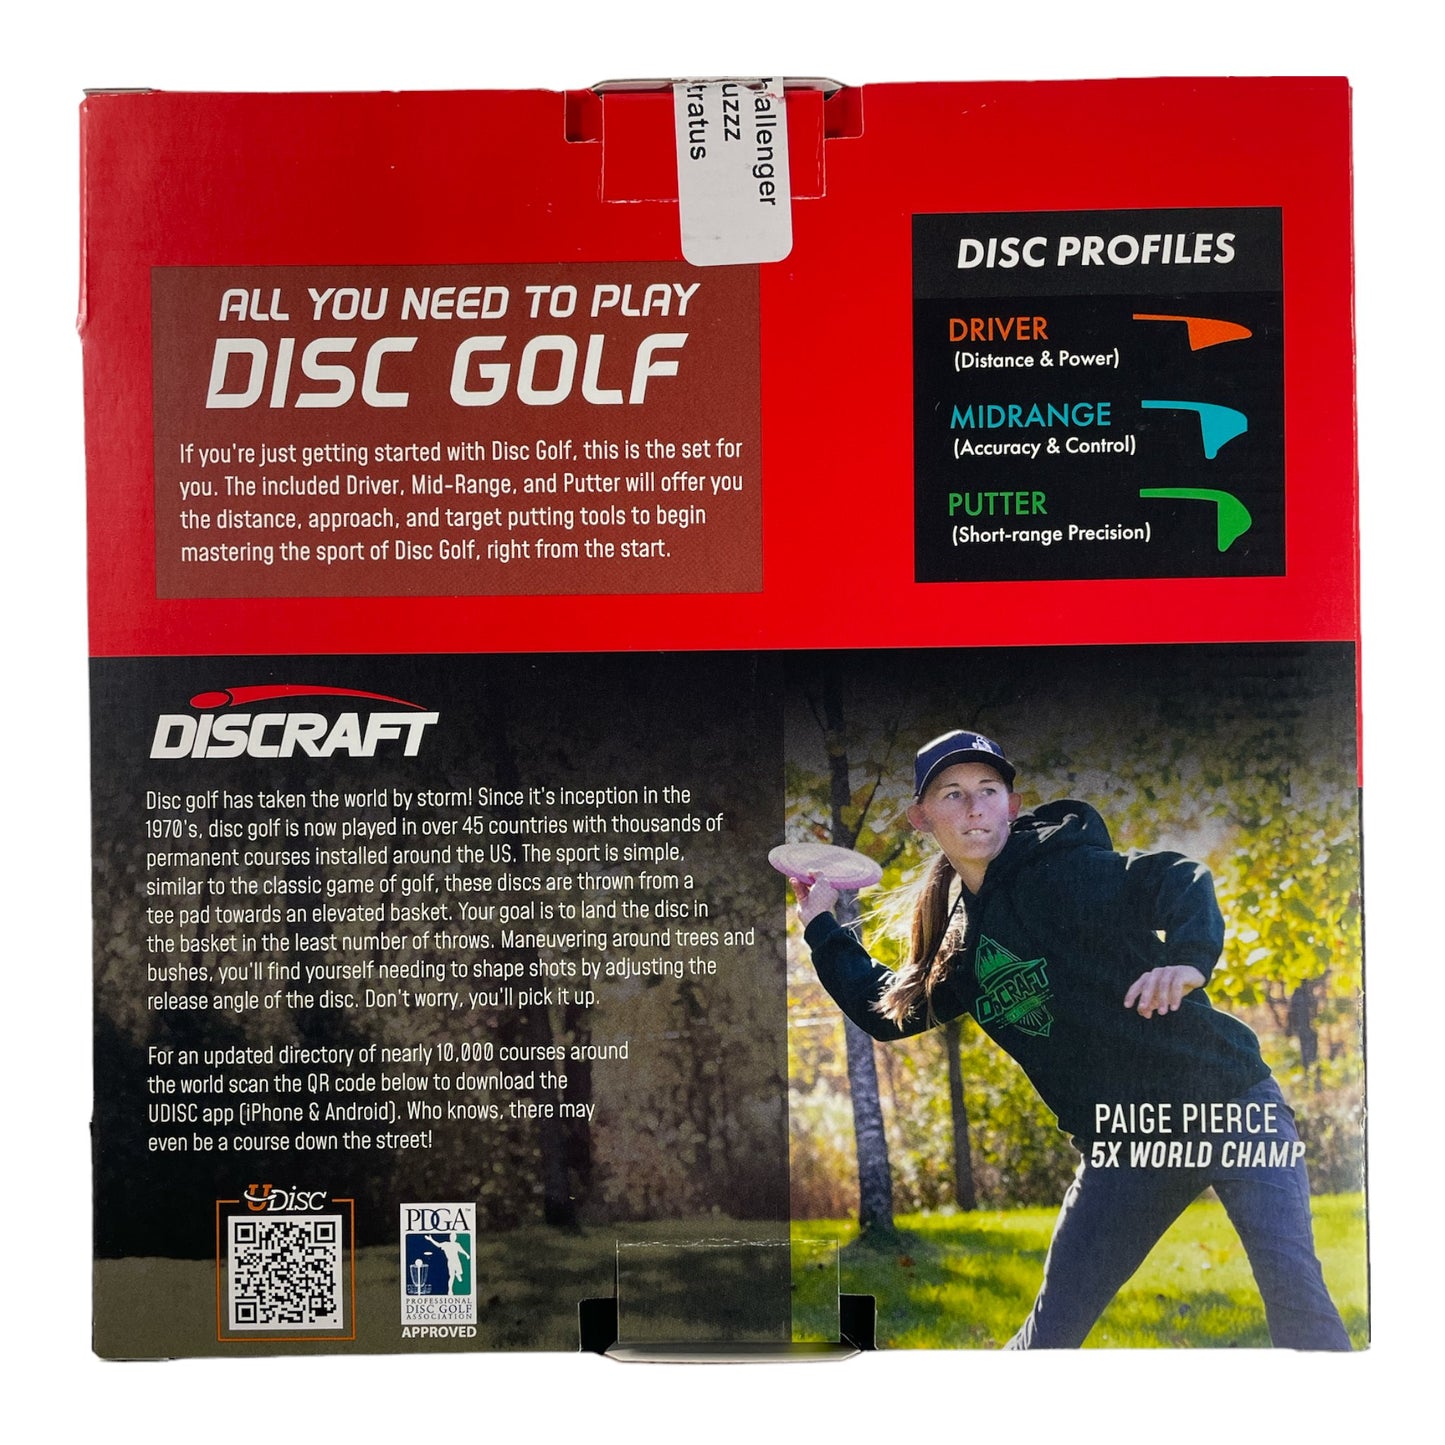 Discraft Discraft Starter Set Disc Golf